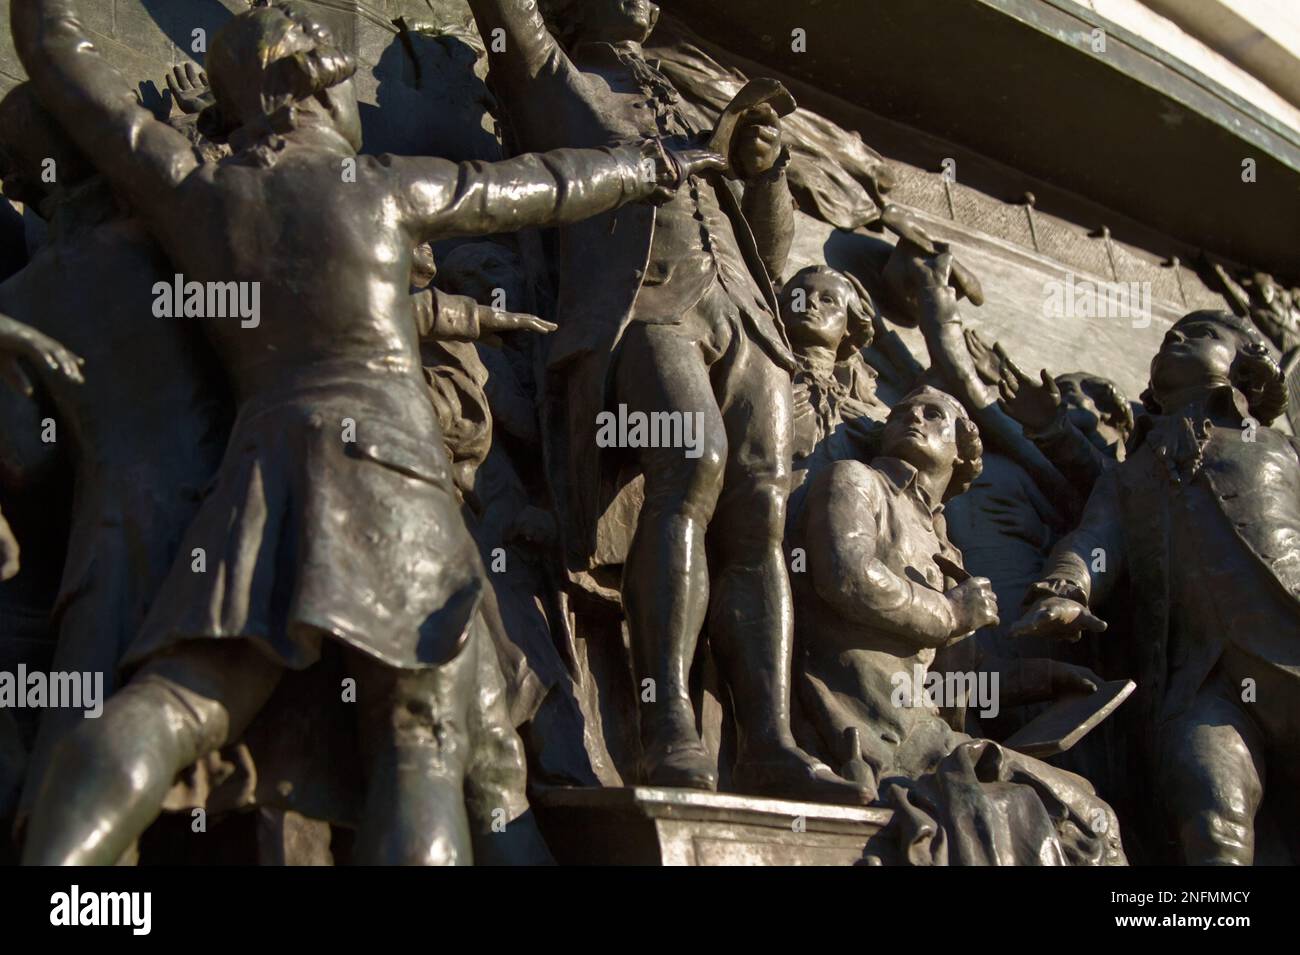 Détail de la plaque de secours en bronze du court de tennis Oath à la base DU Monument à la République, place de la République, Paris France Banque D'Images